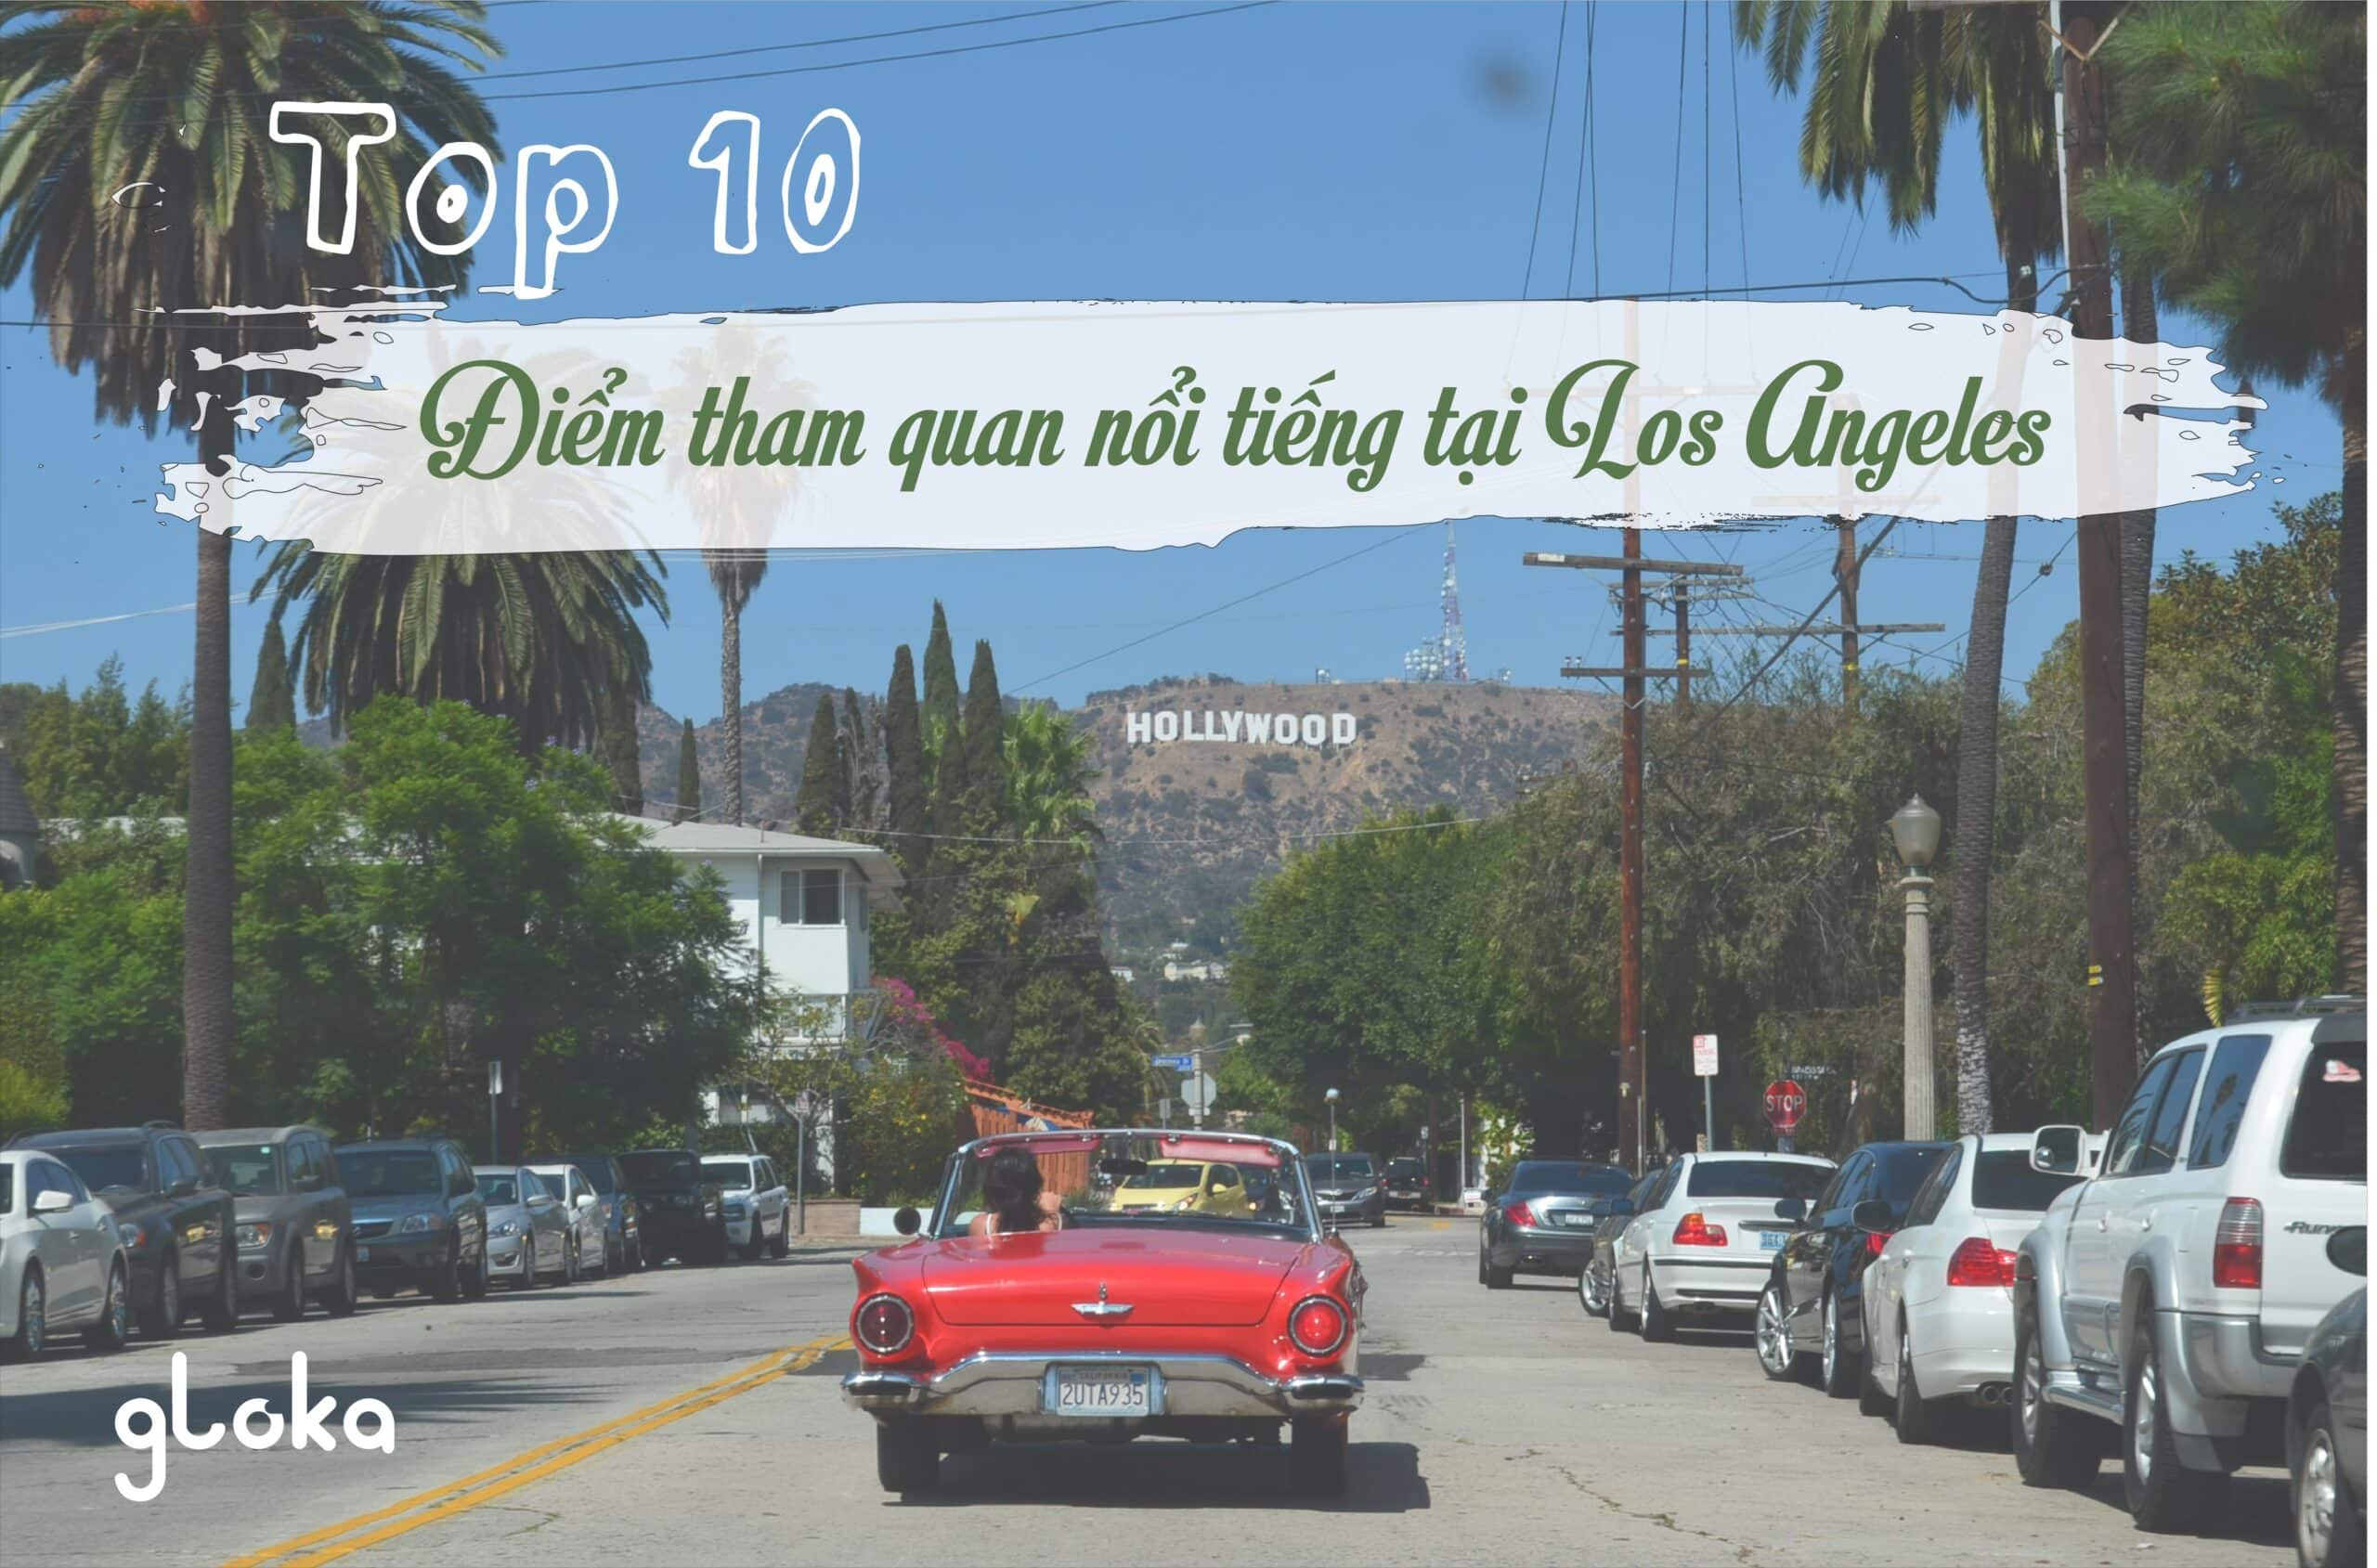 Los Angeles là một trong những thành phố lớn và đẹp nhất của nước Mỹ. Với những địa điểm nổi tiếng, những sự kiện sôi động và những con phố đặc sắc, Los Angeles chắc chắn sẽ là một điểm đến tuyệt vời cho những người yêu thích khám phá và trải nghiệm cuộc sống. Hãy xem hình ảnh về chuyến tham quan Los Angeles để khám phá thêm về thành phố này nhé!